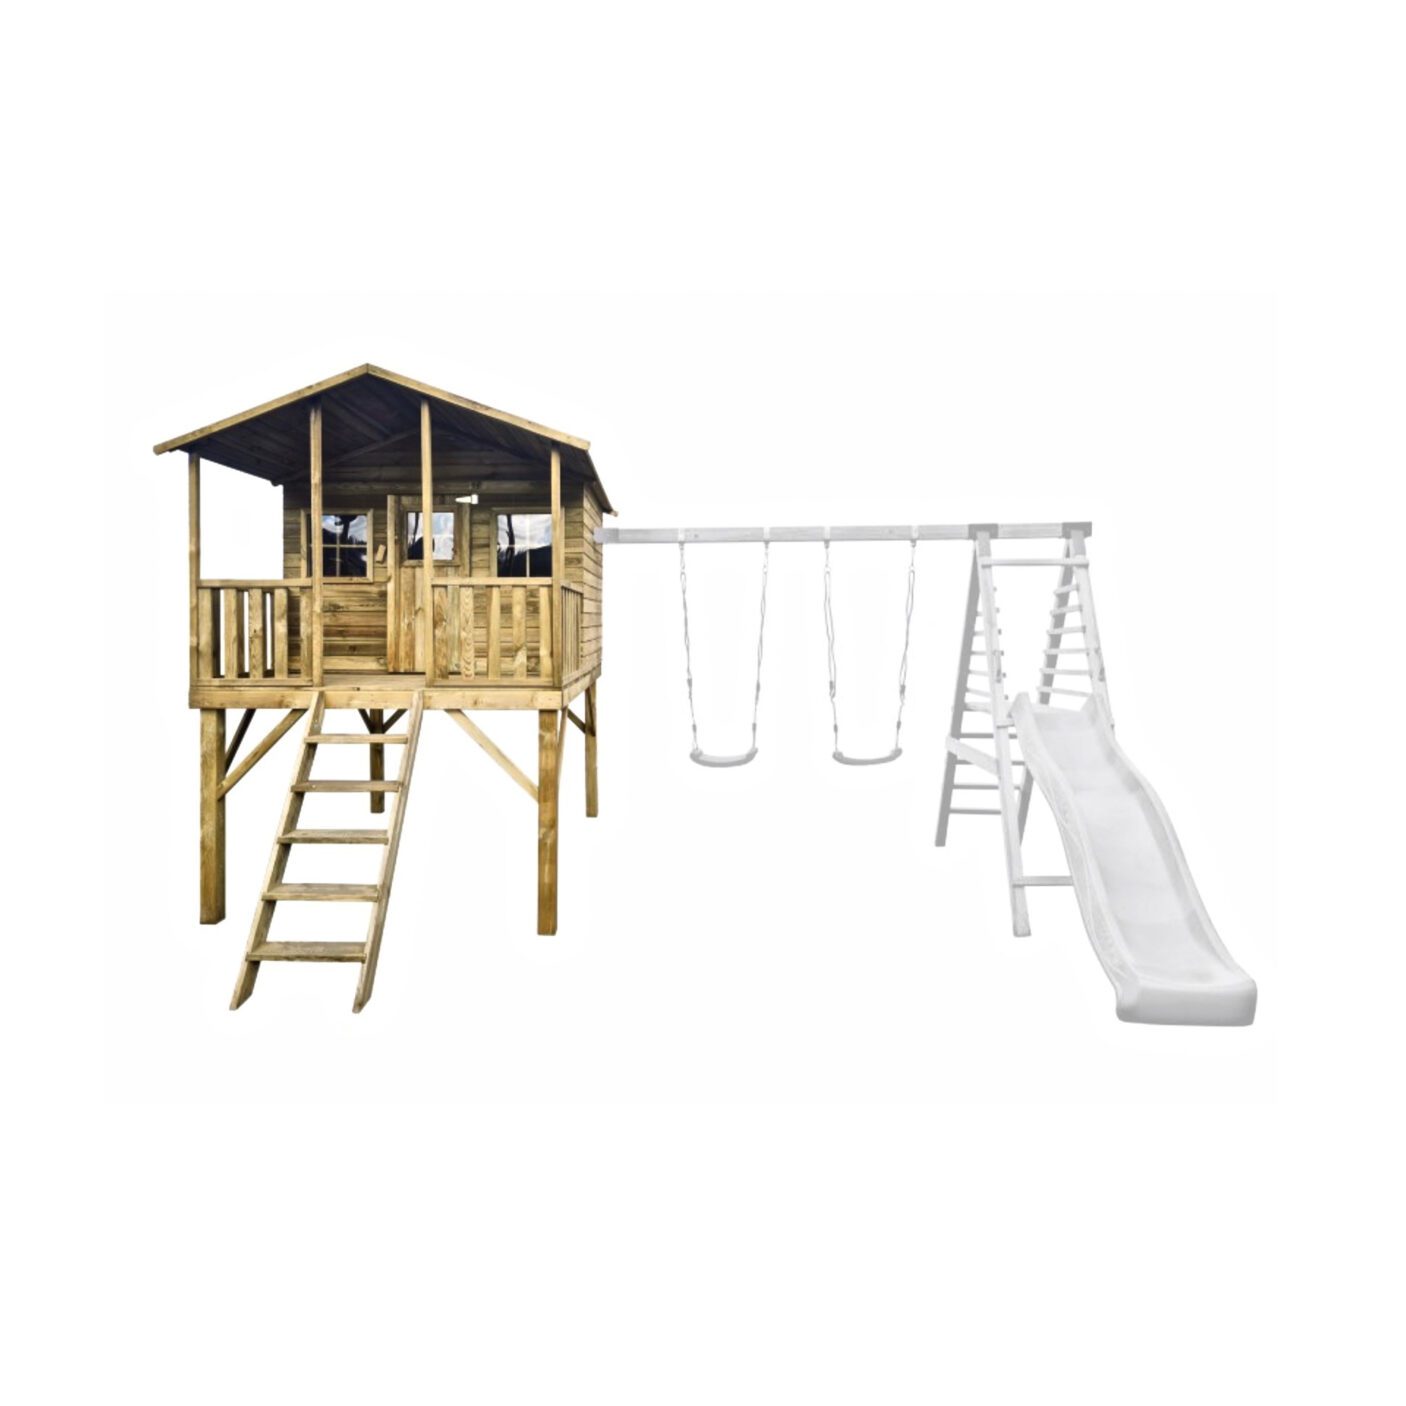 Medinis vaikų žaidimų namelis "Girinukas" su dvigubomis sūpynėmis ir laipiojimo kopetėlėmis